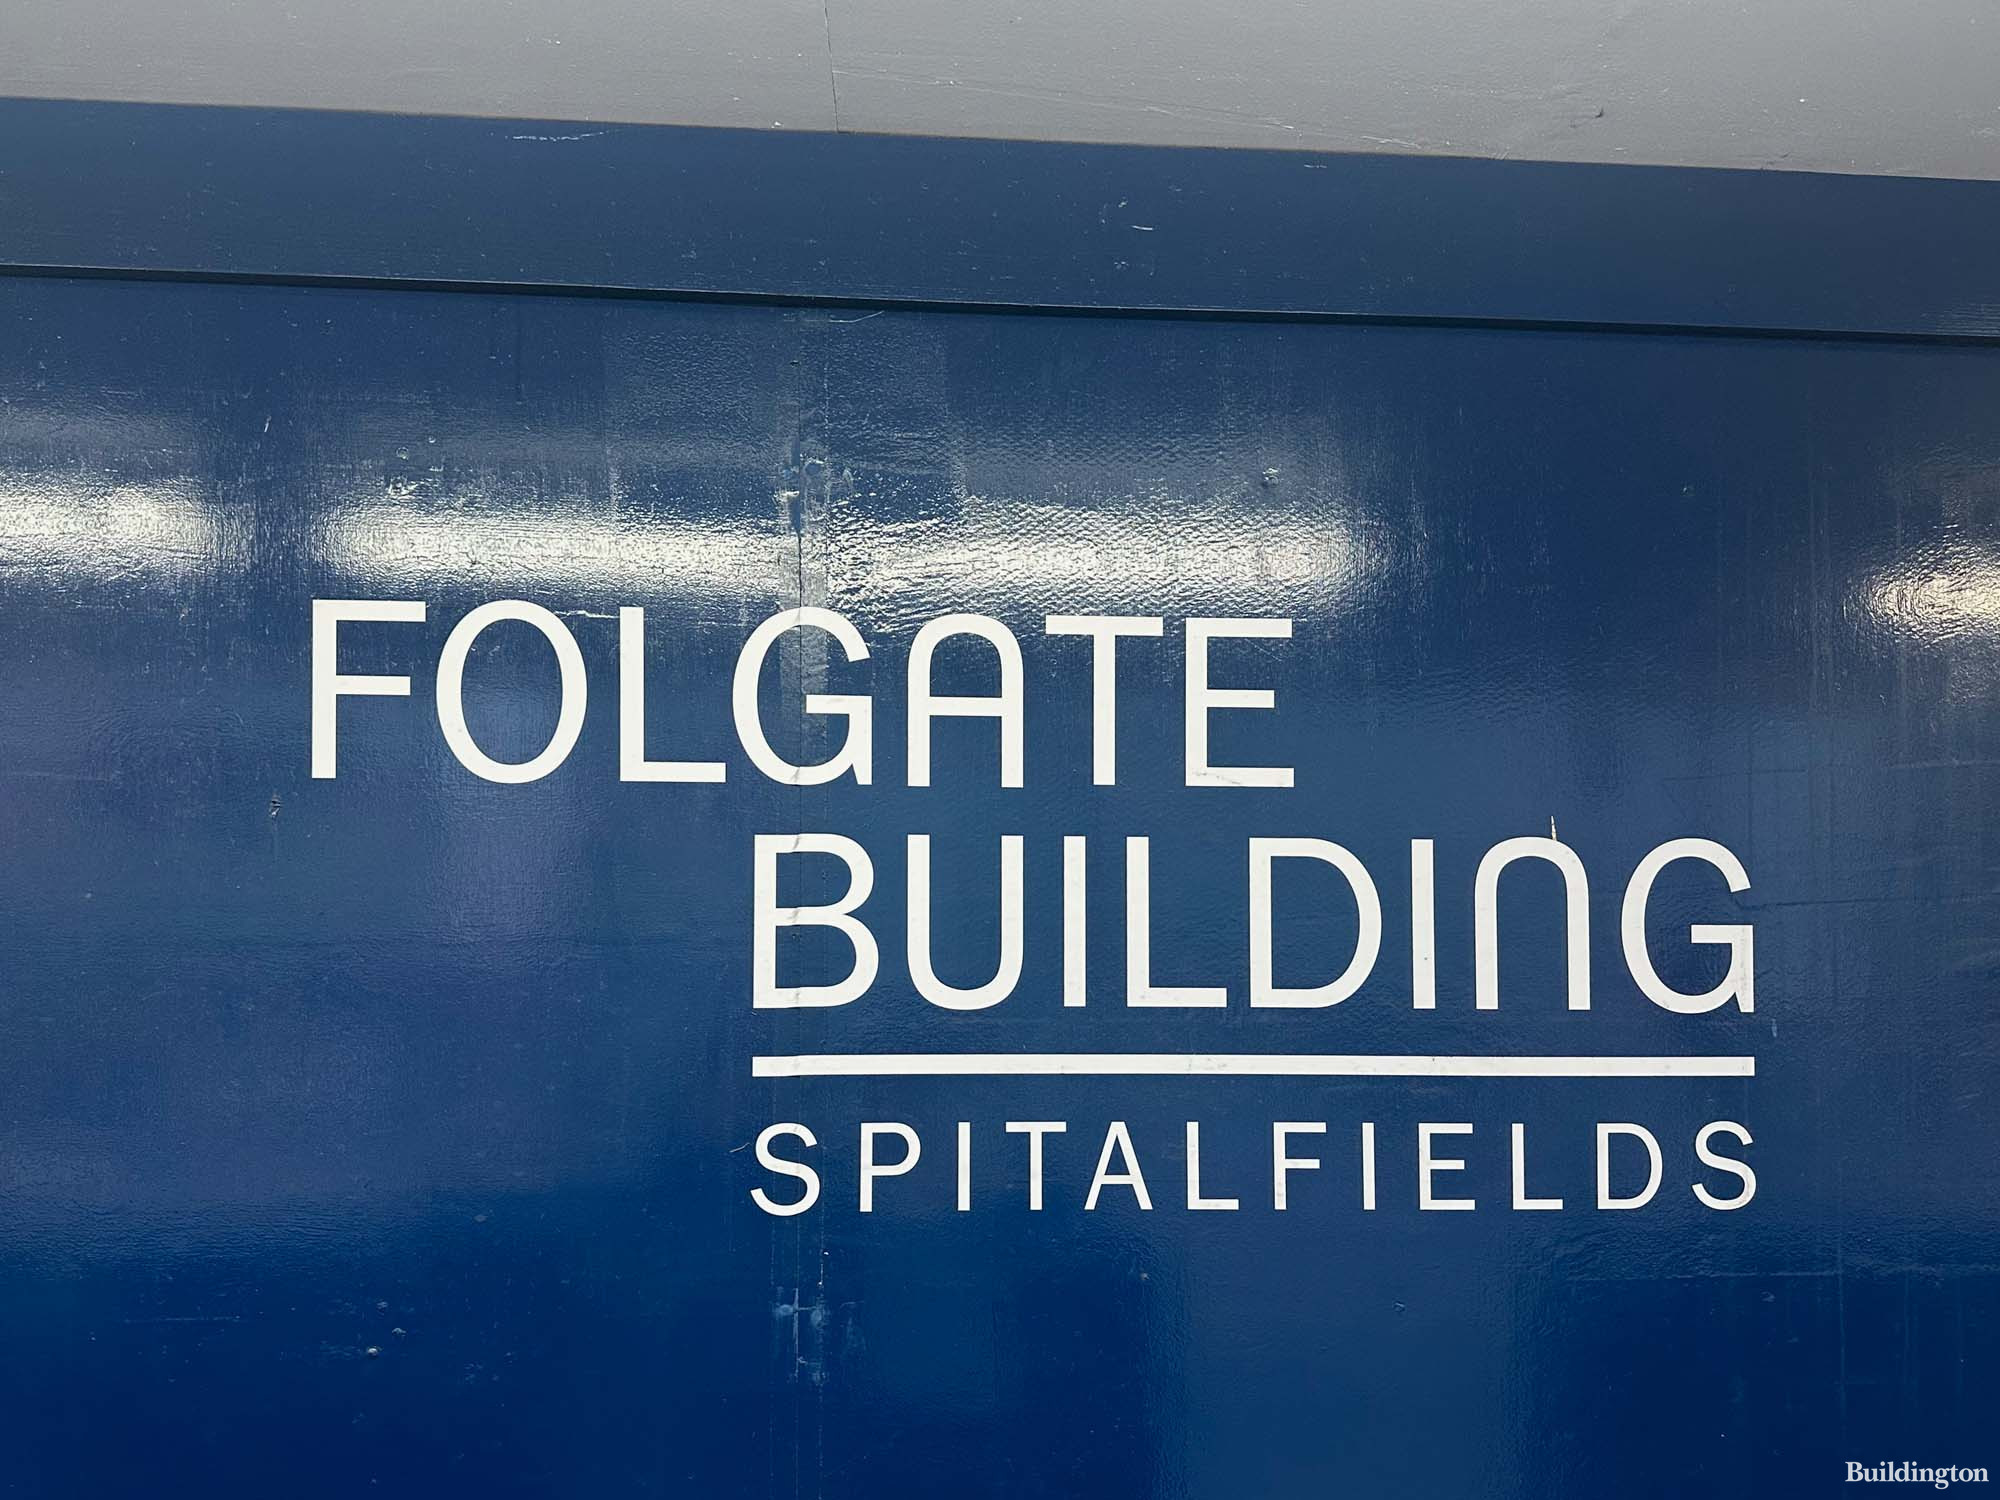 Folgate Building office development hoarding in Spitalfields, London E1